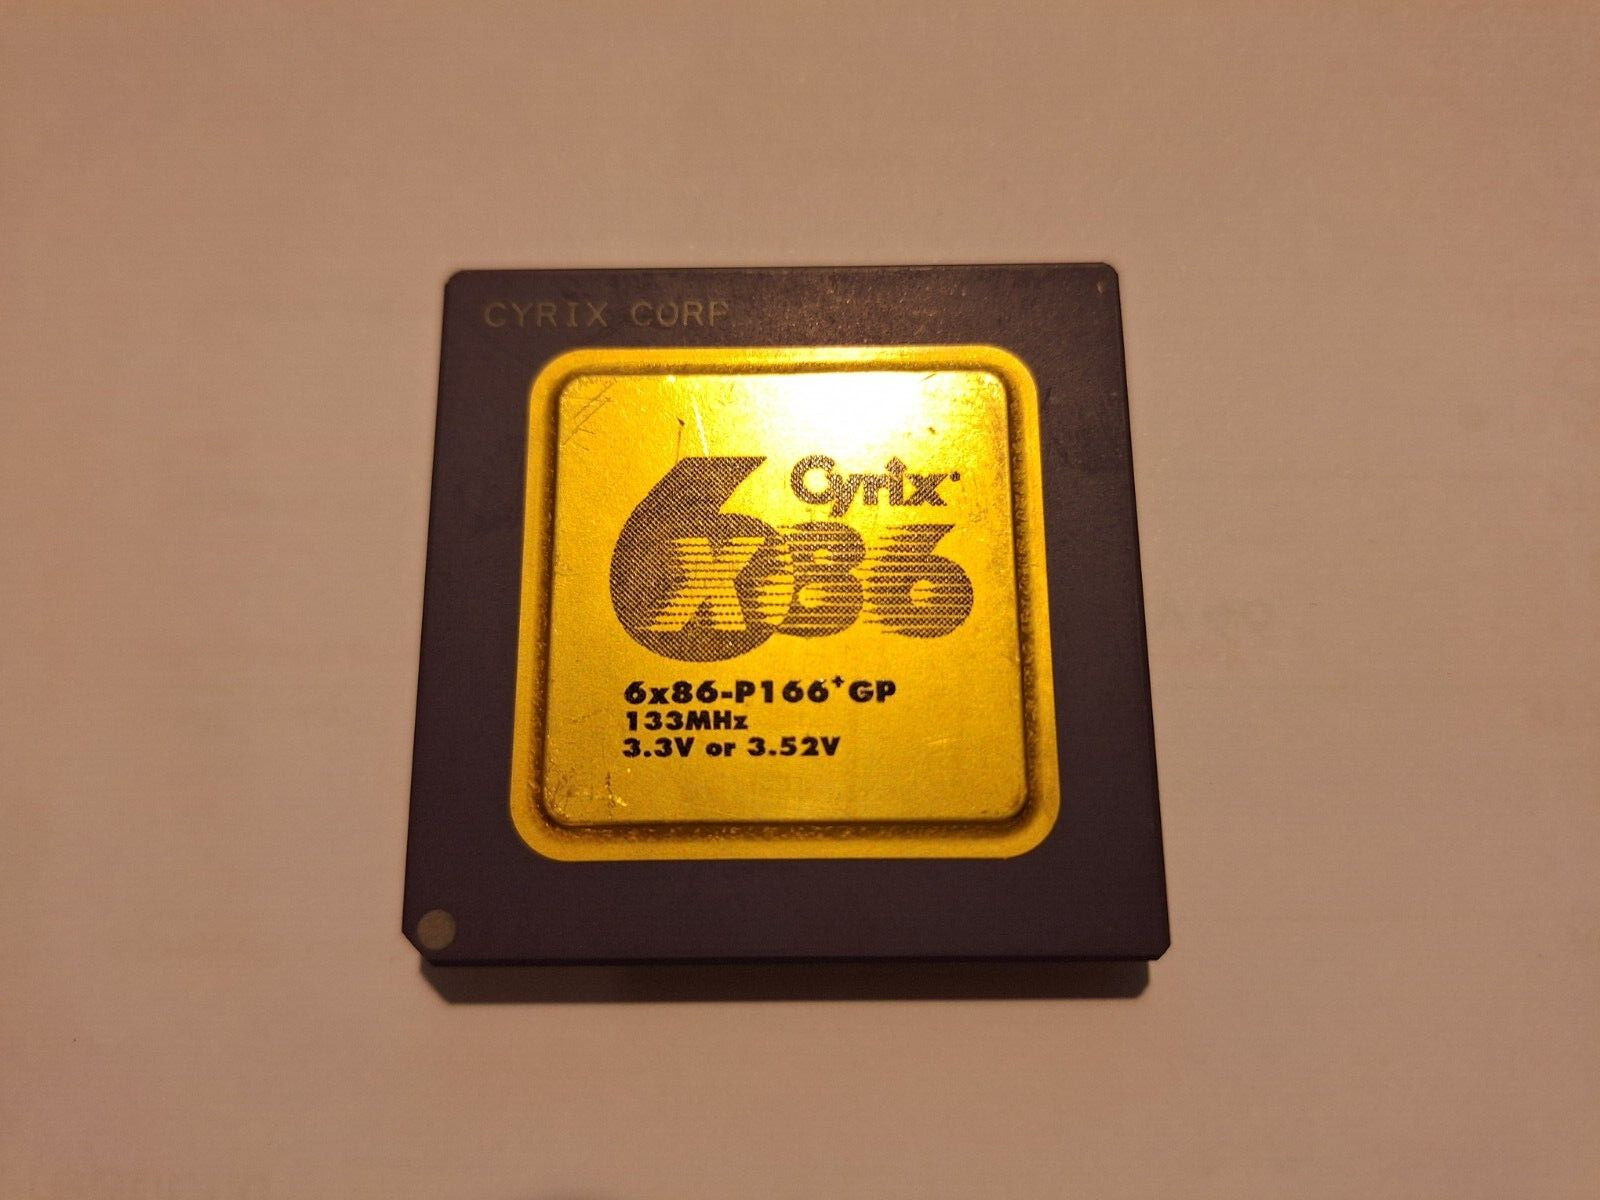 Cyrix 6x86-P166+ GP 133MHz 3.3 or 3.52V 6x86 vintage CPU GOLD